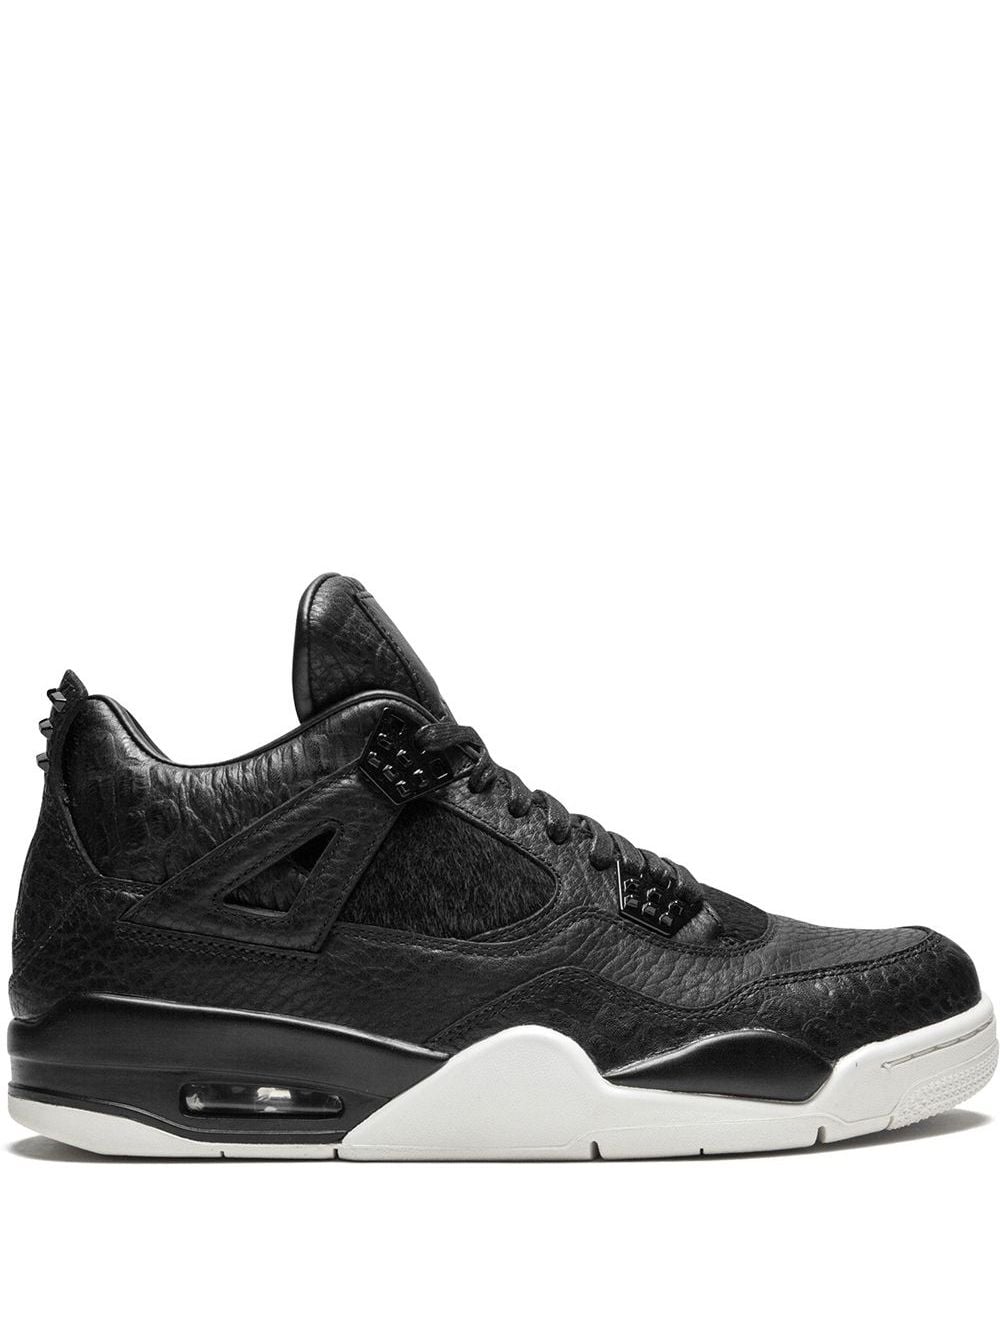 Jordan Air Jordan 4 Retro Premium "Pinnacle" sneakers - Black